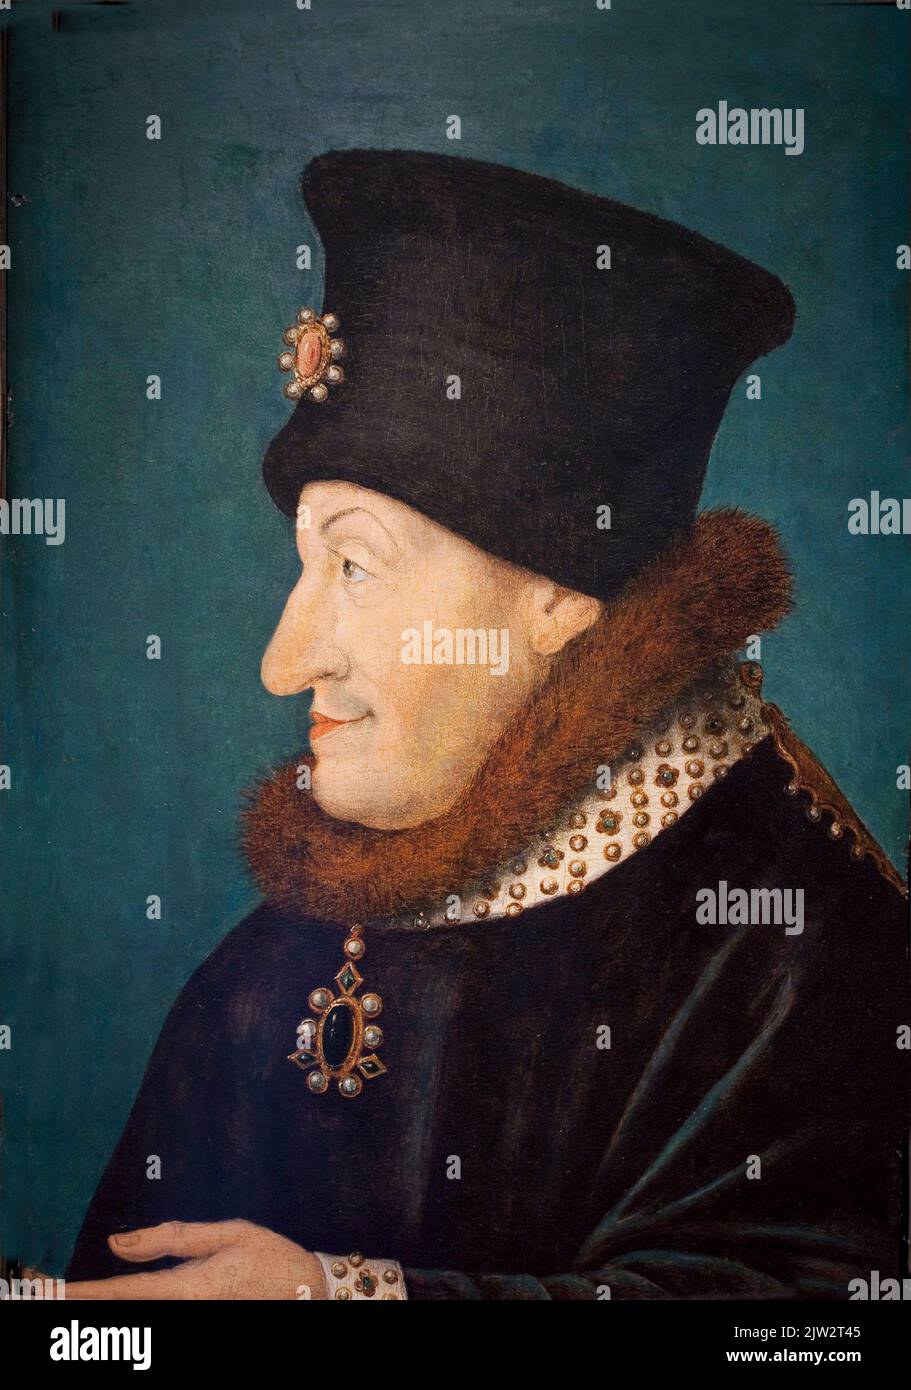 Portrait de Philippe Le Hardi, duc de Bourgogne (1342-1404). Il porte un chapeau et un col en fourrure avec un pendentif. Peinture. Musee des Beaux Arts de Dijon. Stock Photo